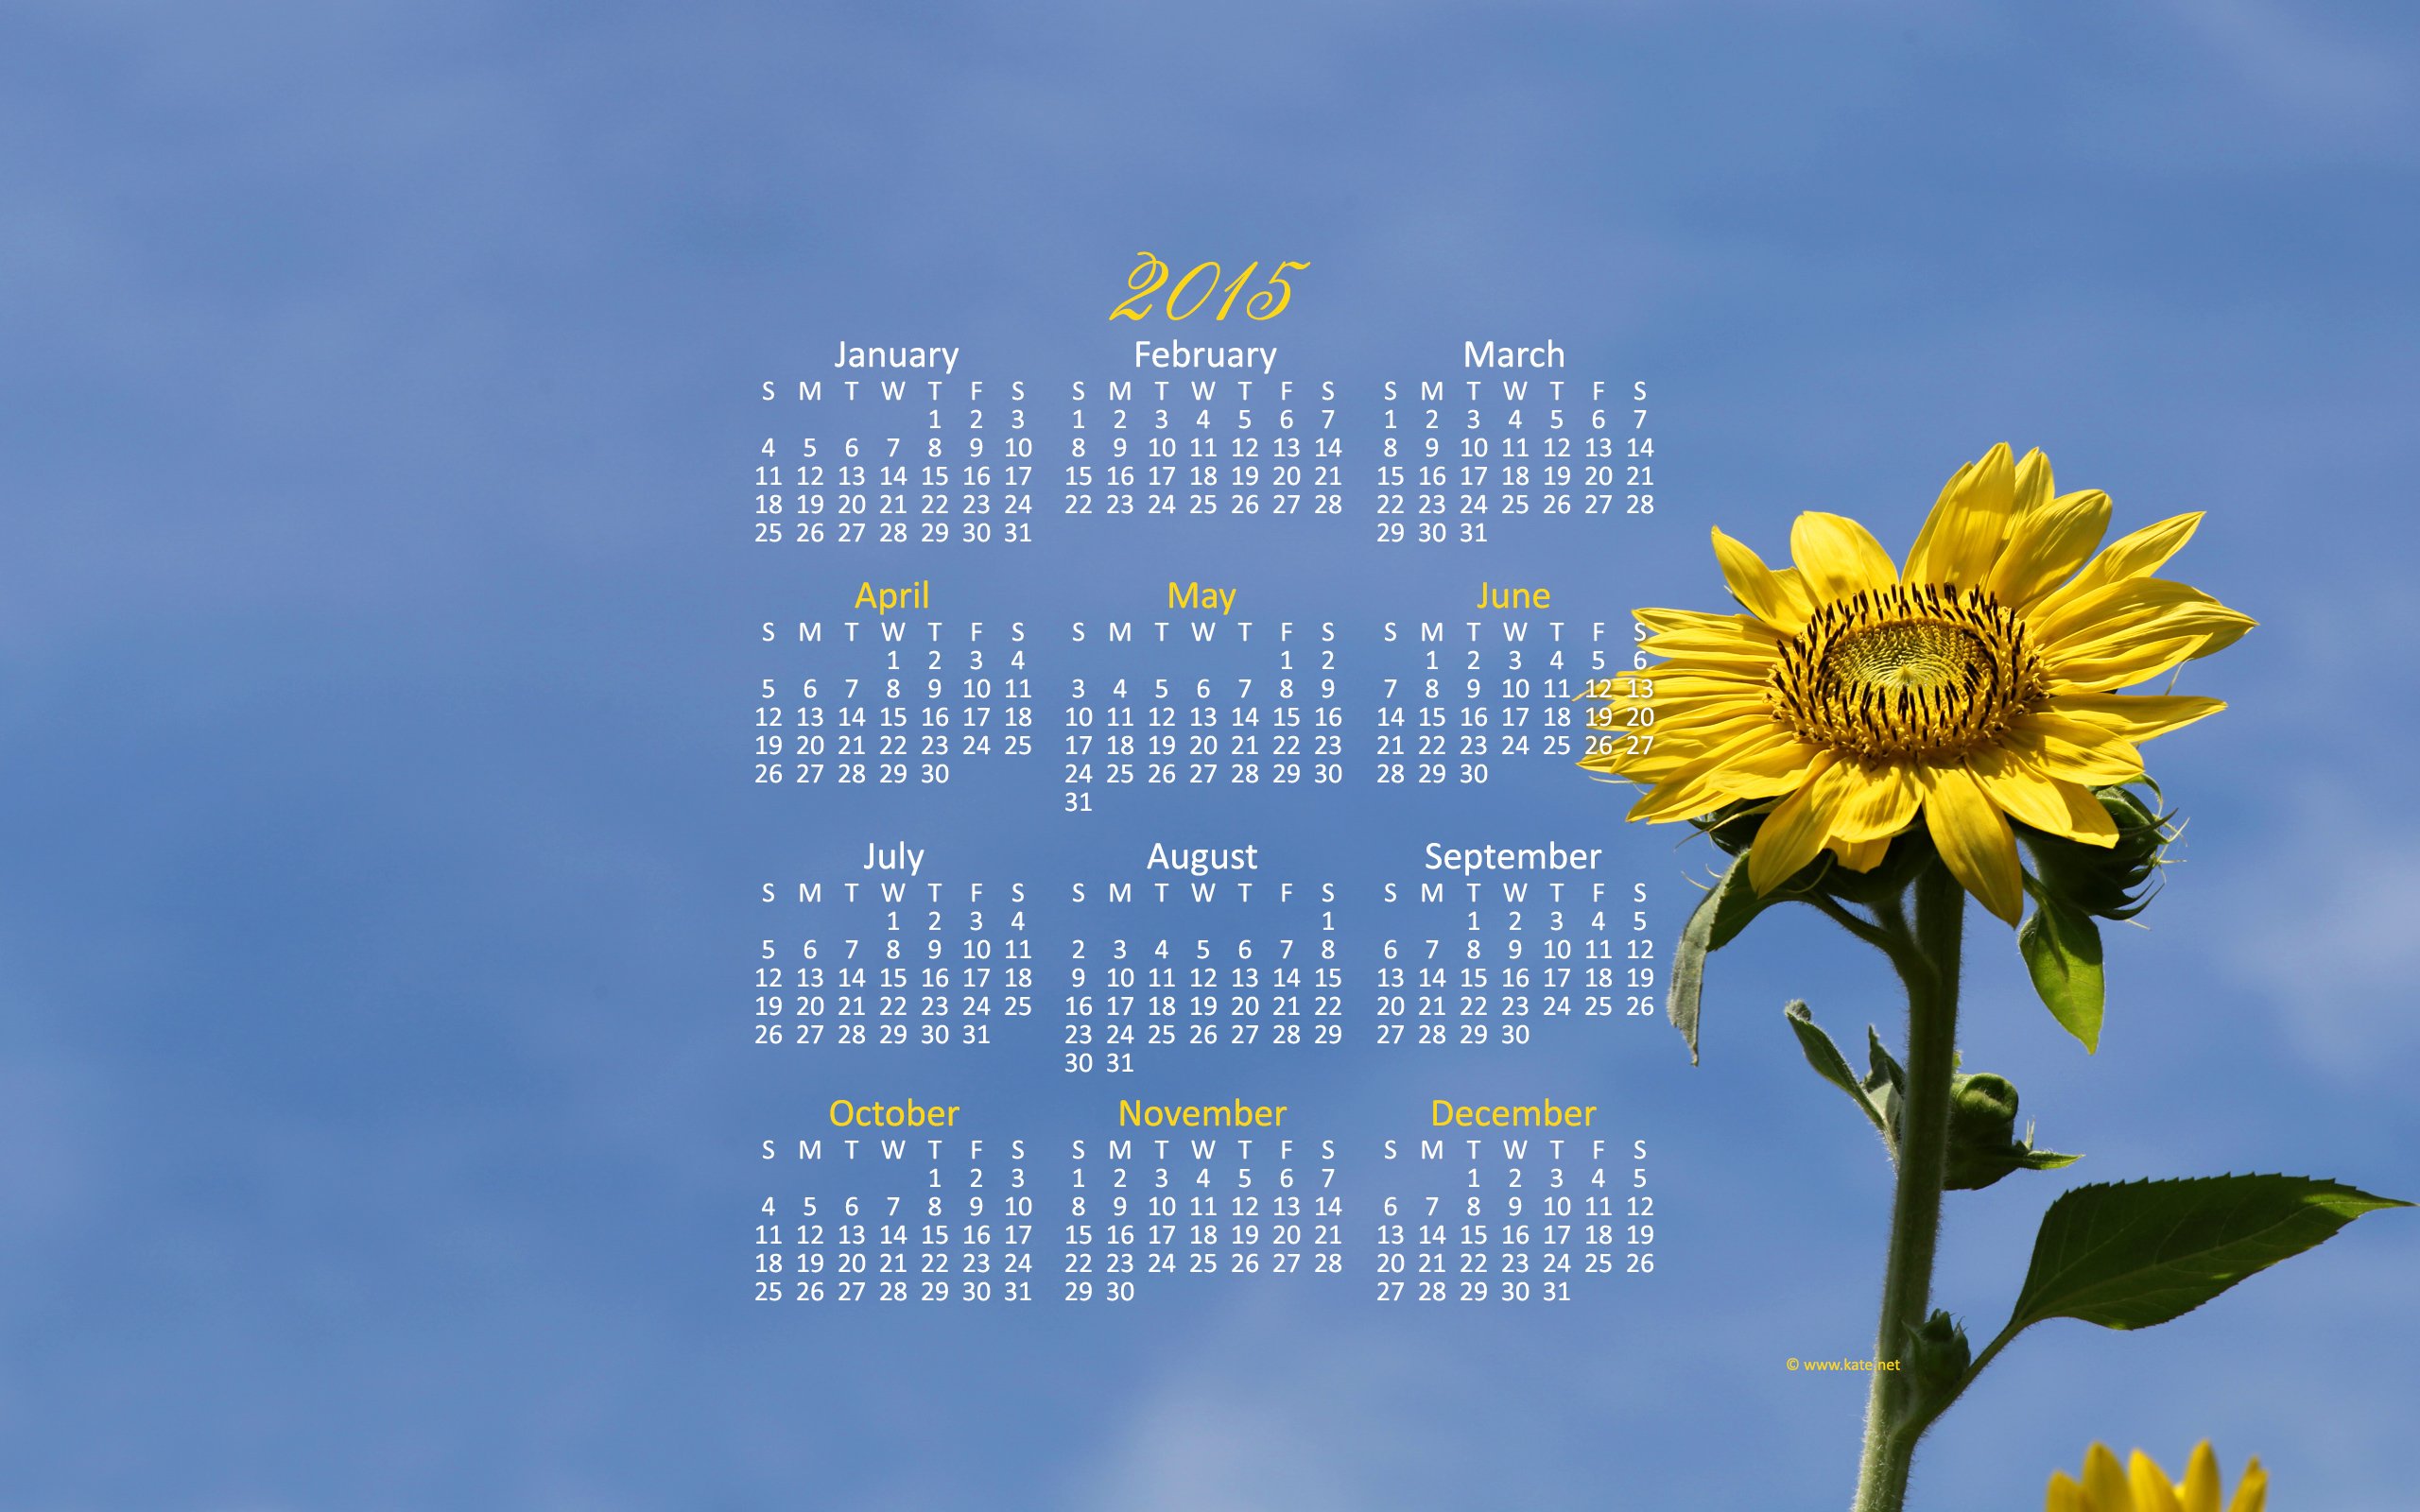 Контур календарь март 2024